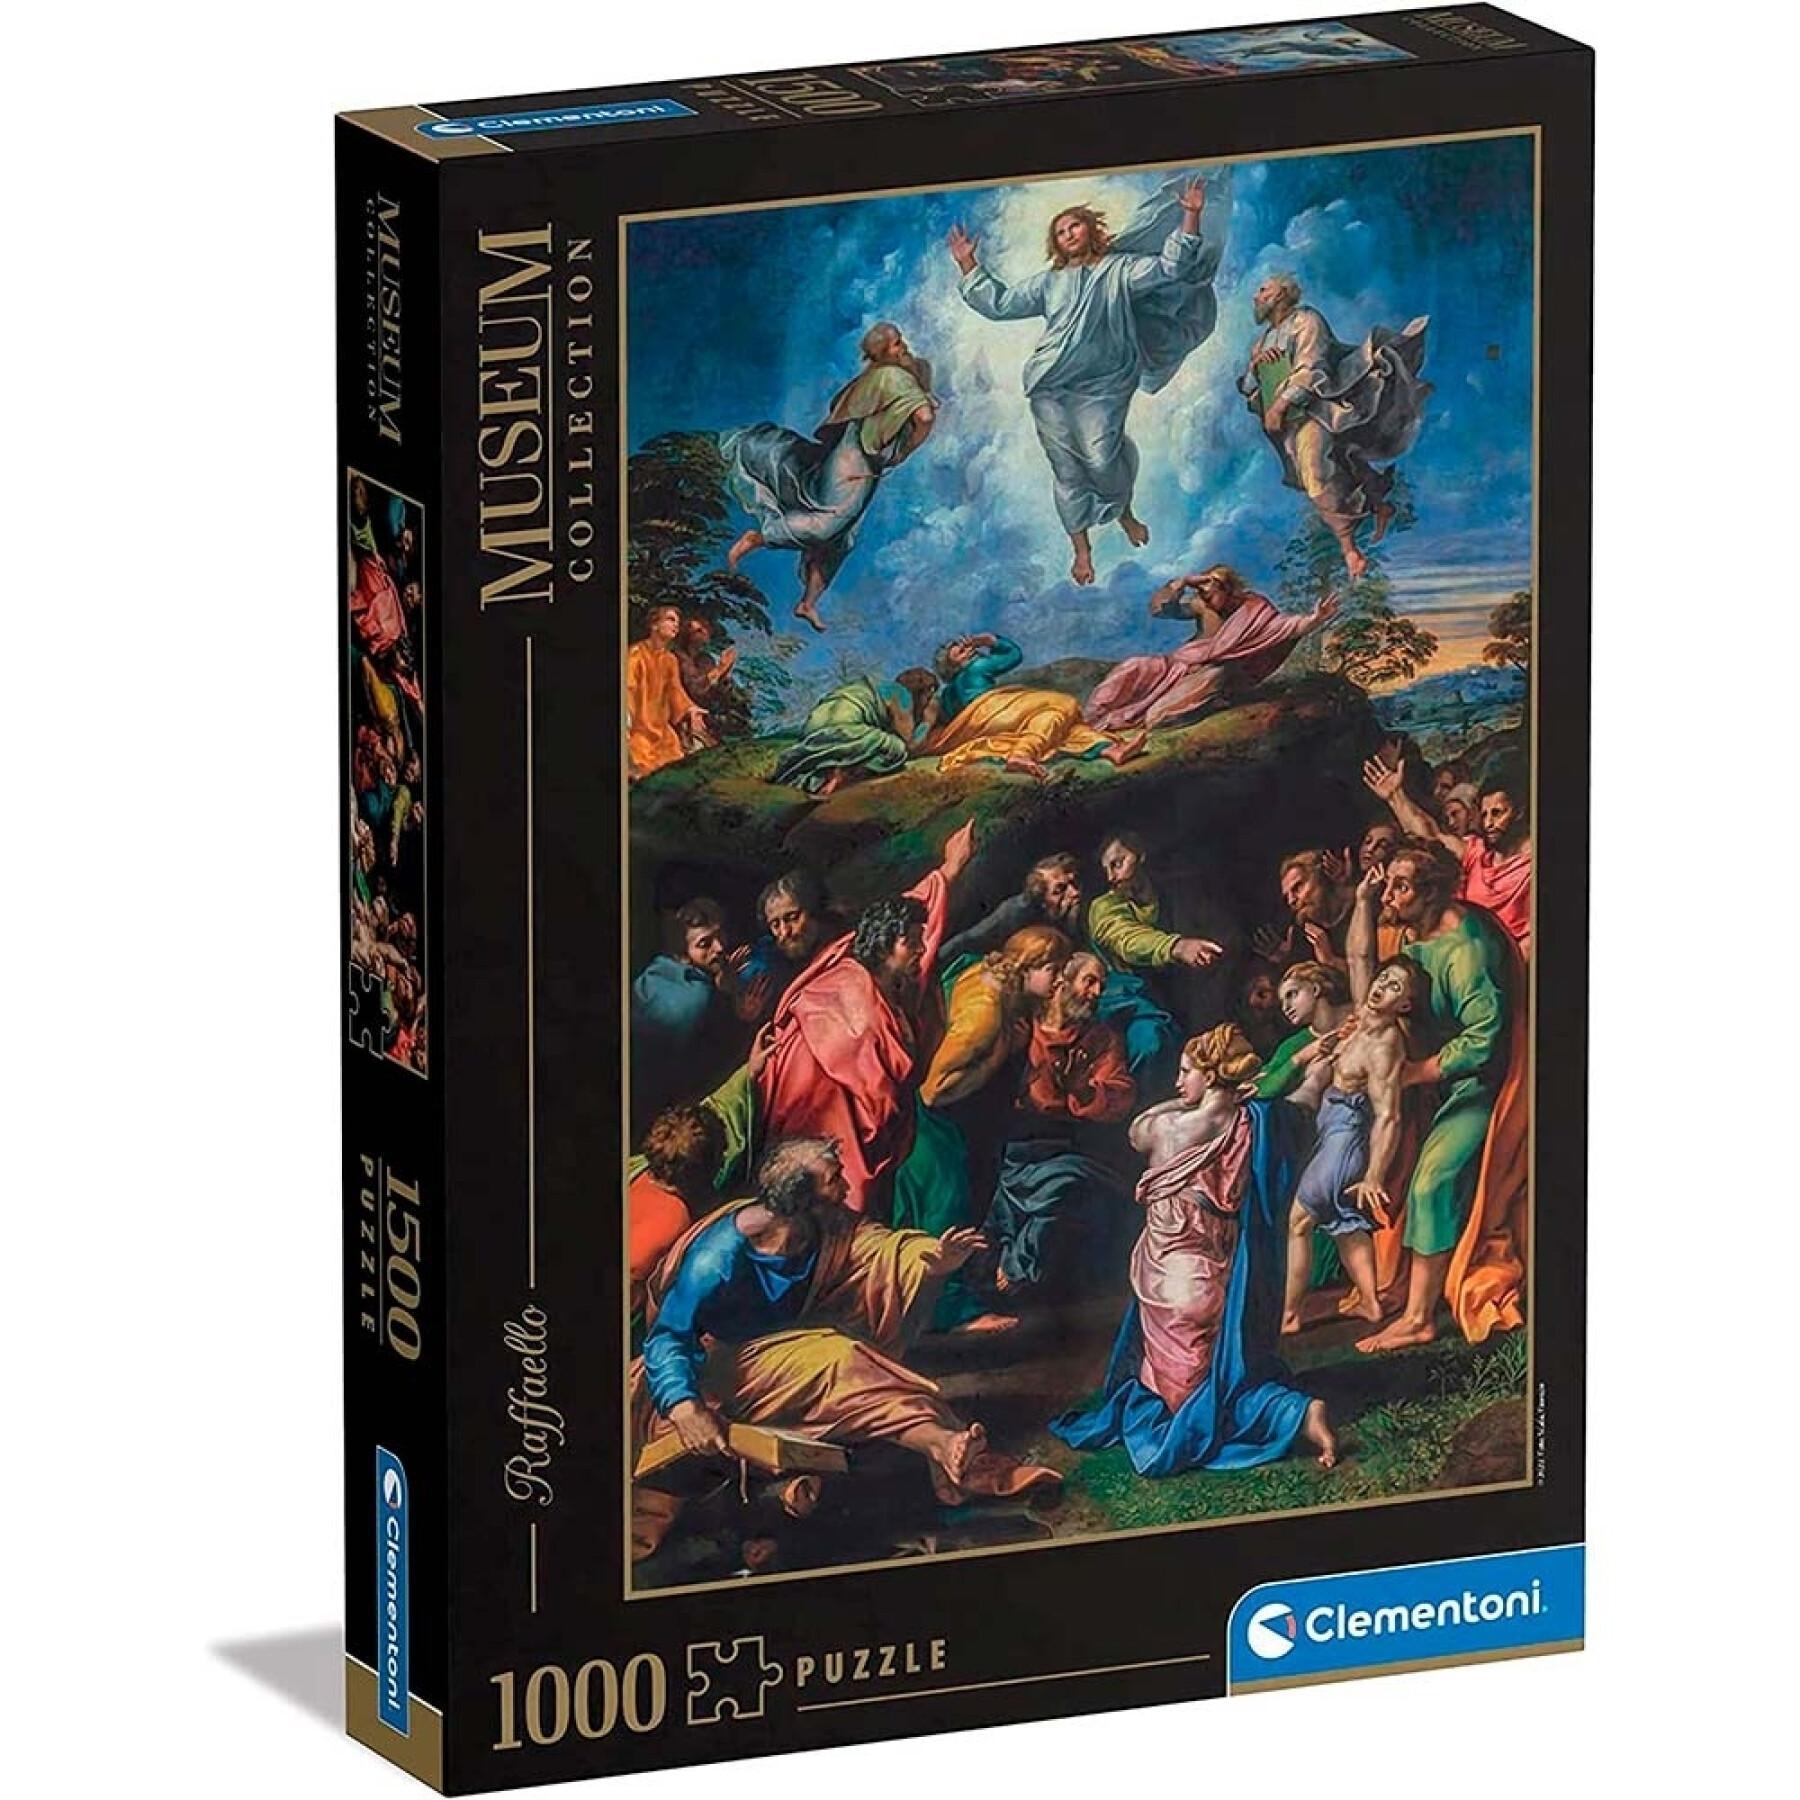 Puzzle 1500 peças museu rafael. a transfiguração Clementoni